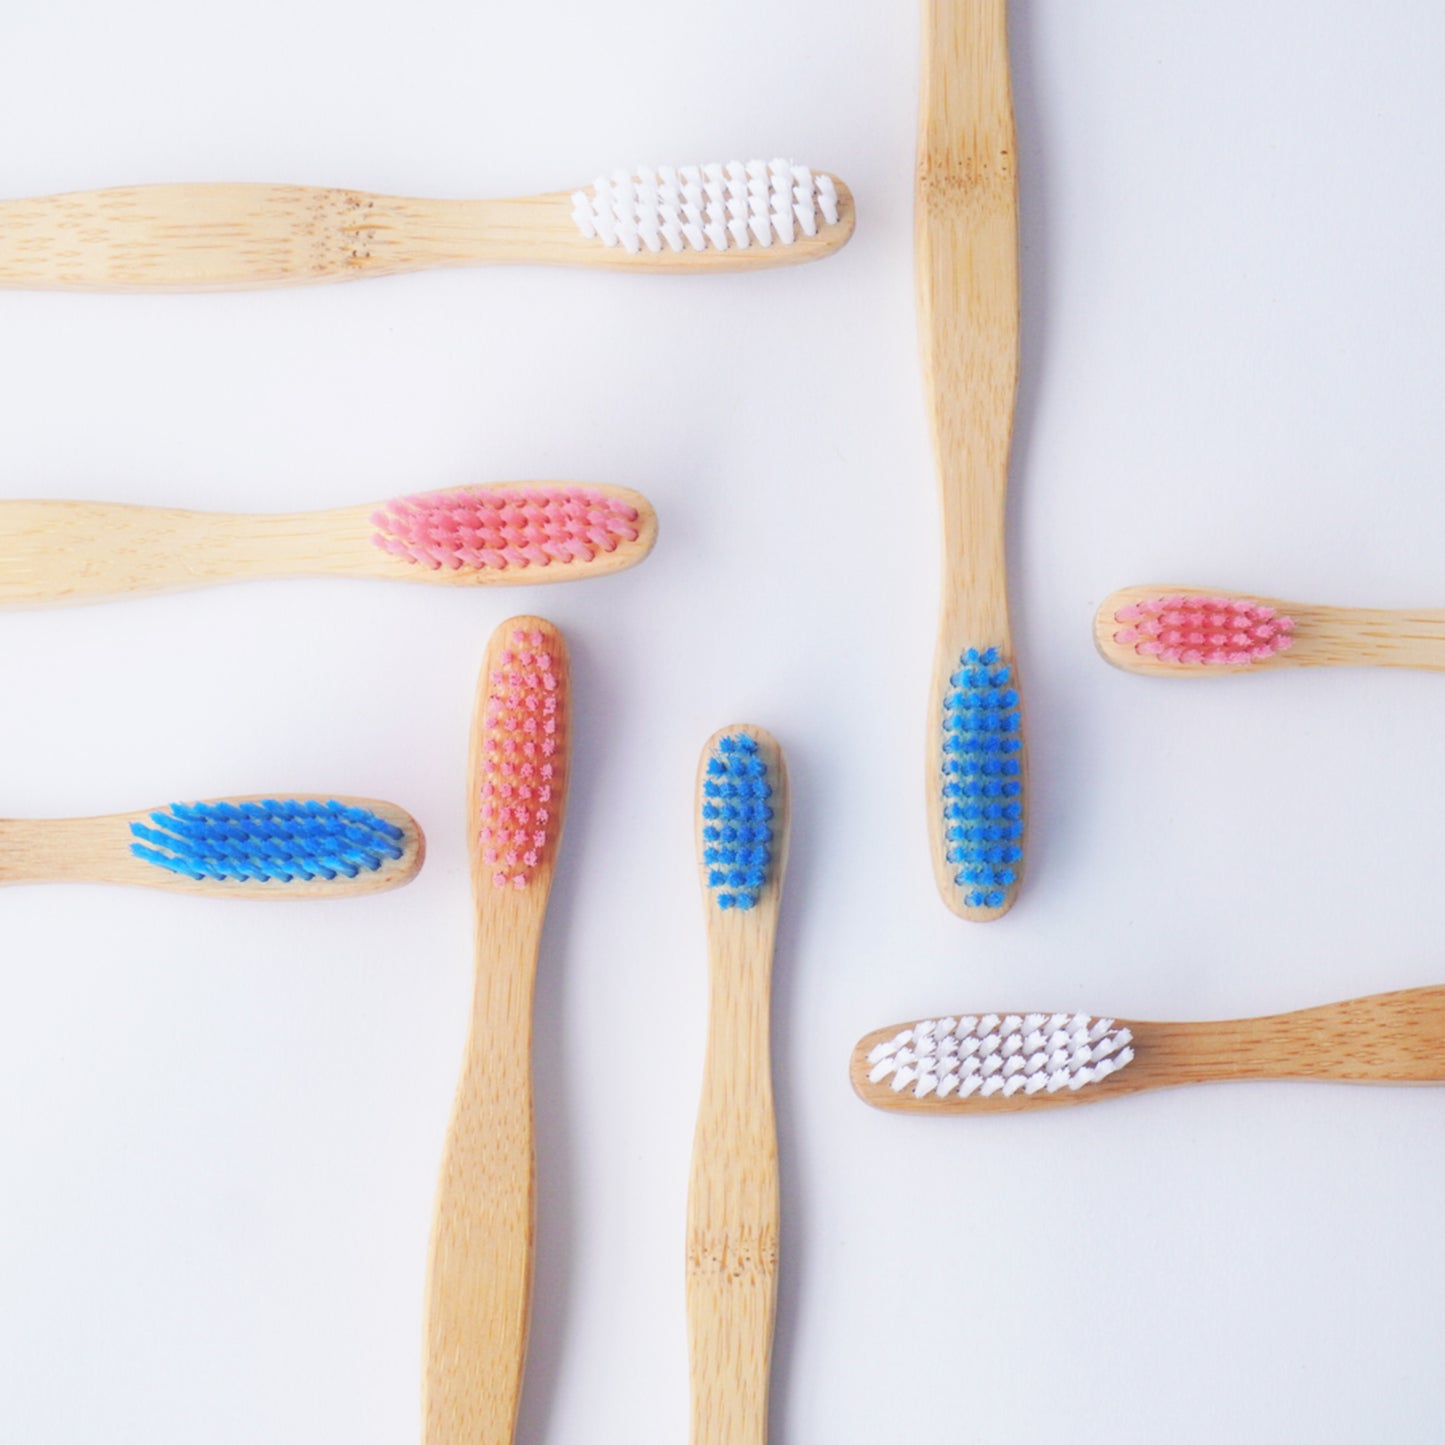 Cepillos de dientes de bambú Biocare (adult@s y niñ@s) - La Tortuga y La Liebre